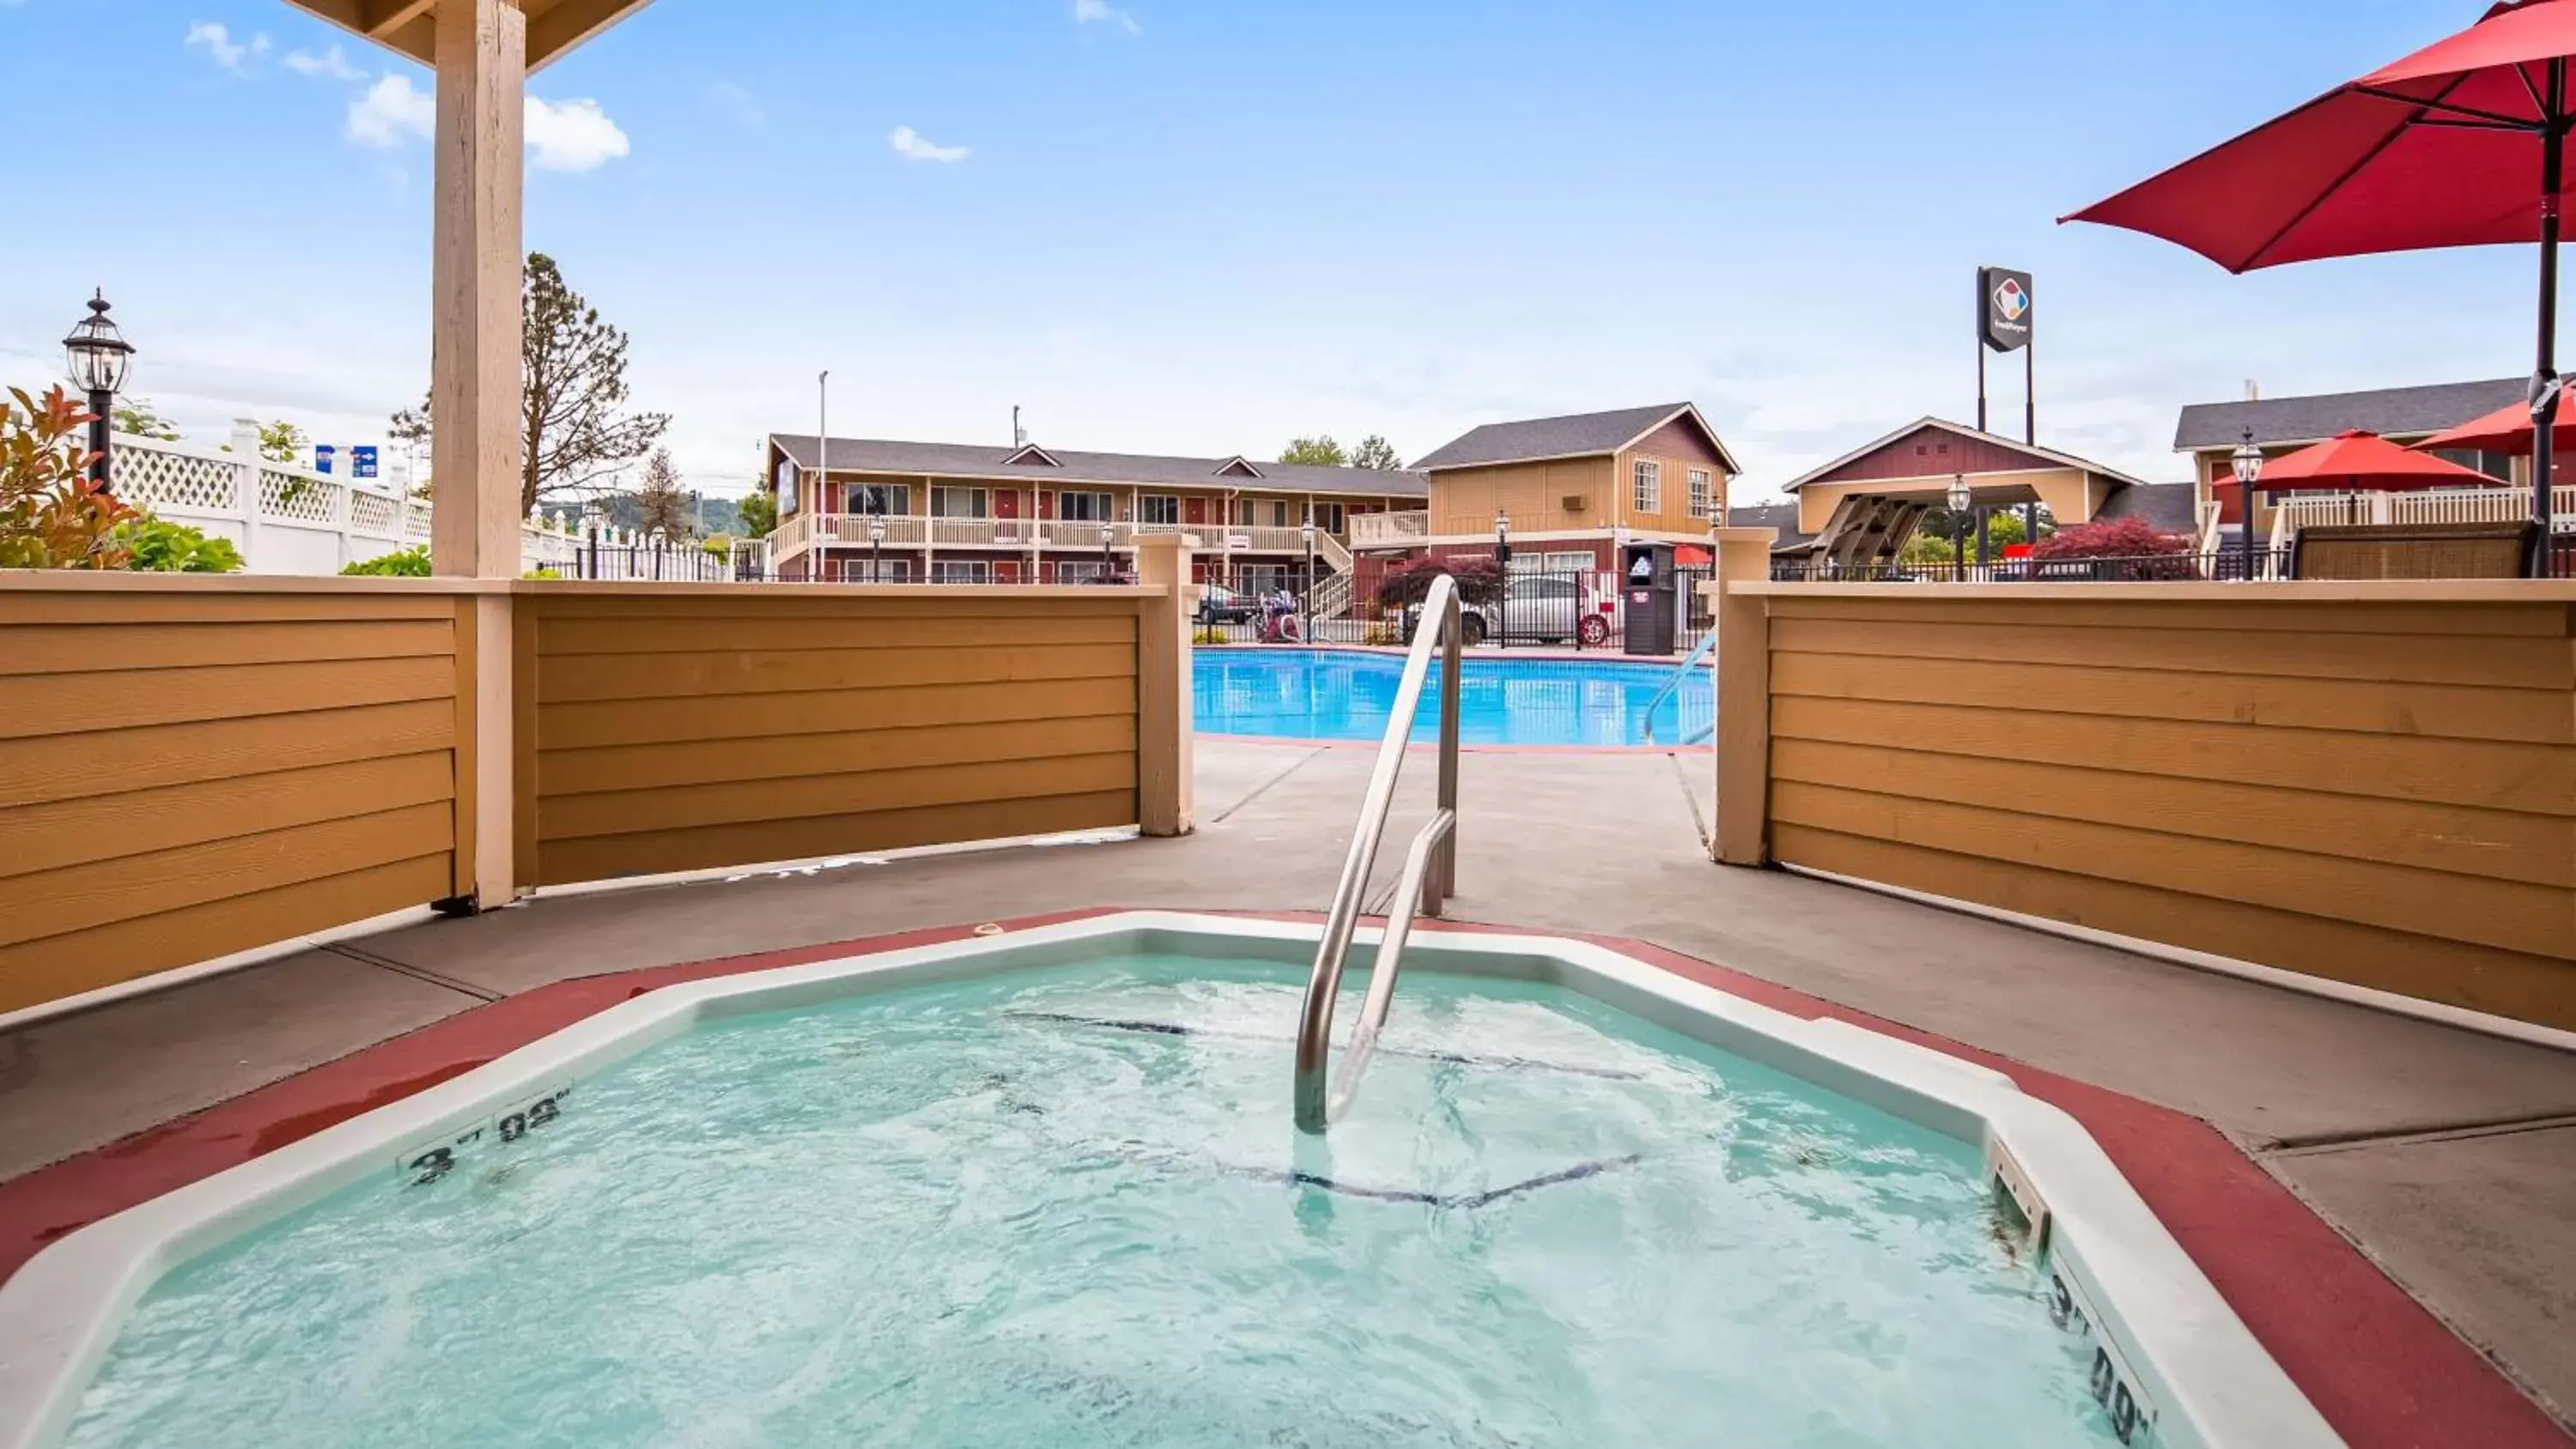 On site, Swimming Pool in Best Western Garden Villa Inn